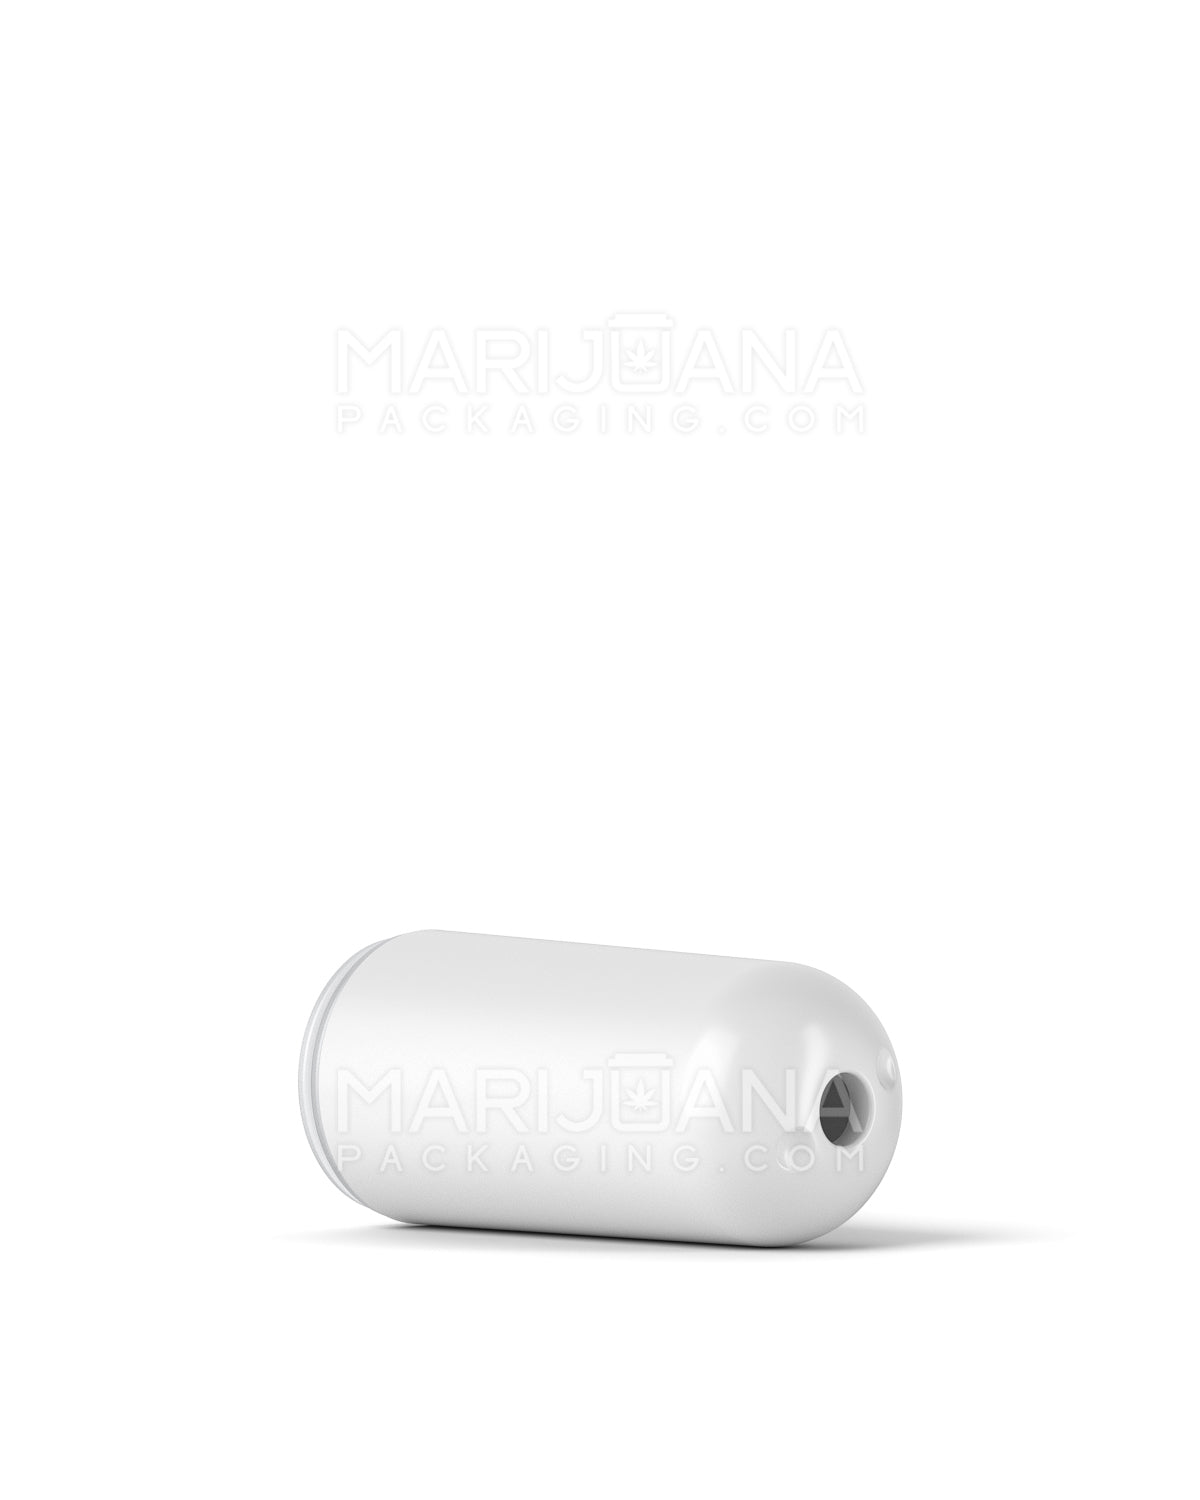 AVD | Bullet Vape Mouthpiece for Glass Cartridges | White Ceramic - Screw On - 600 Count - 5